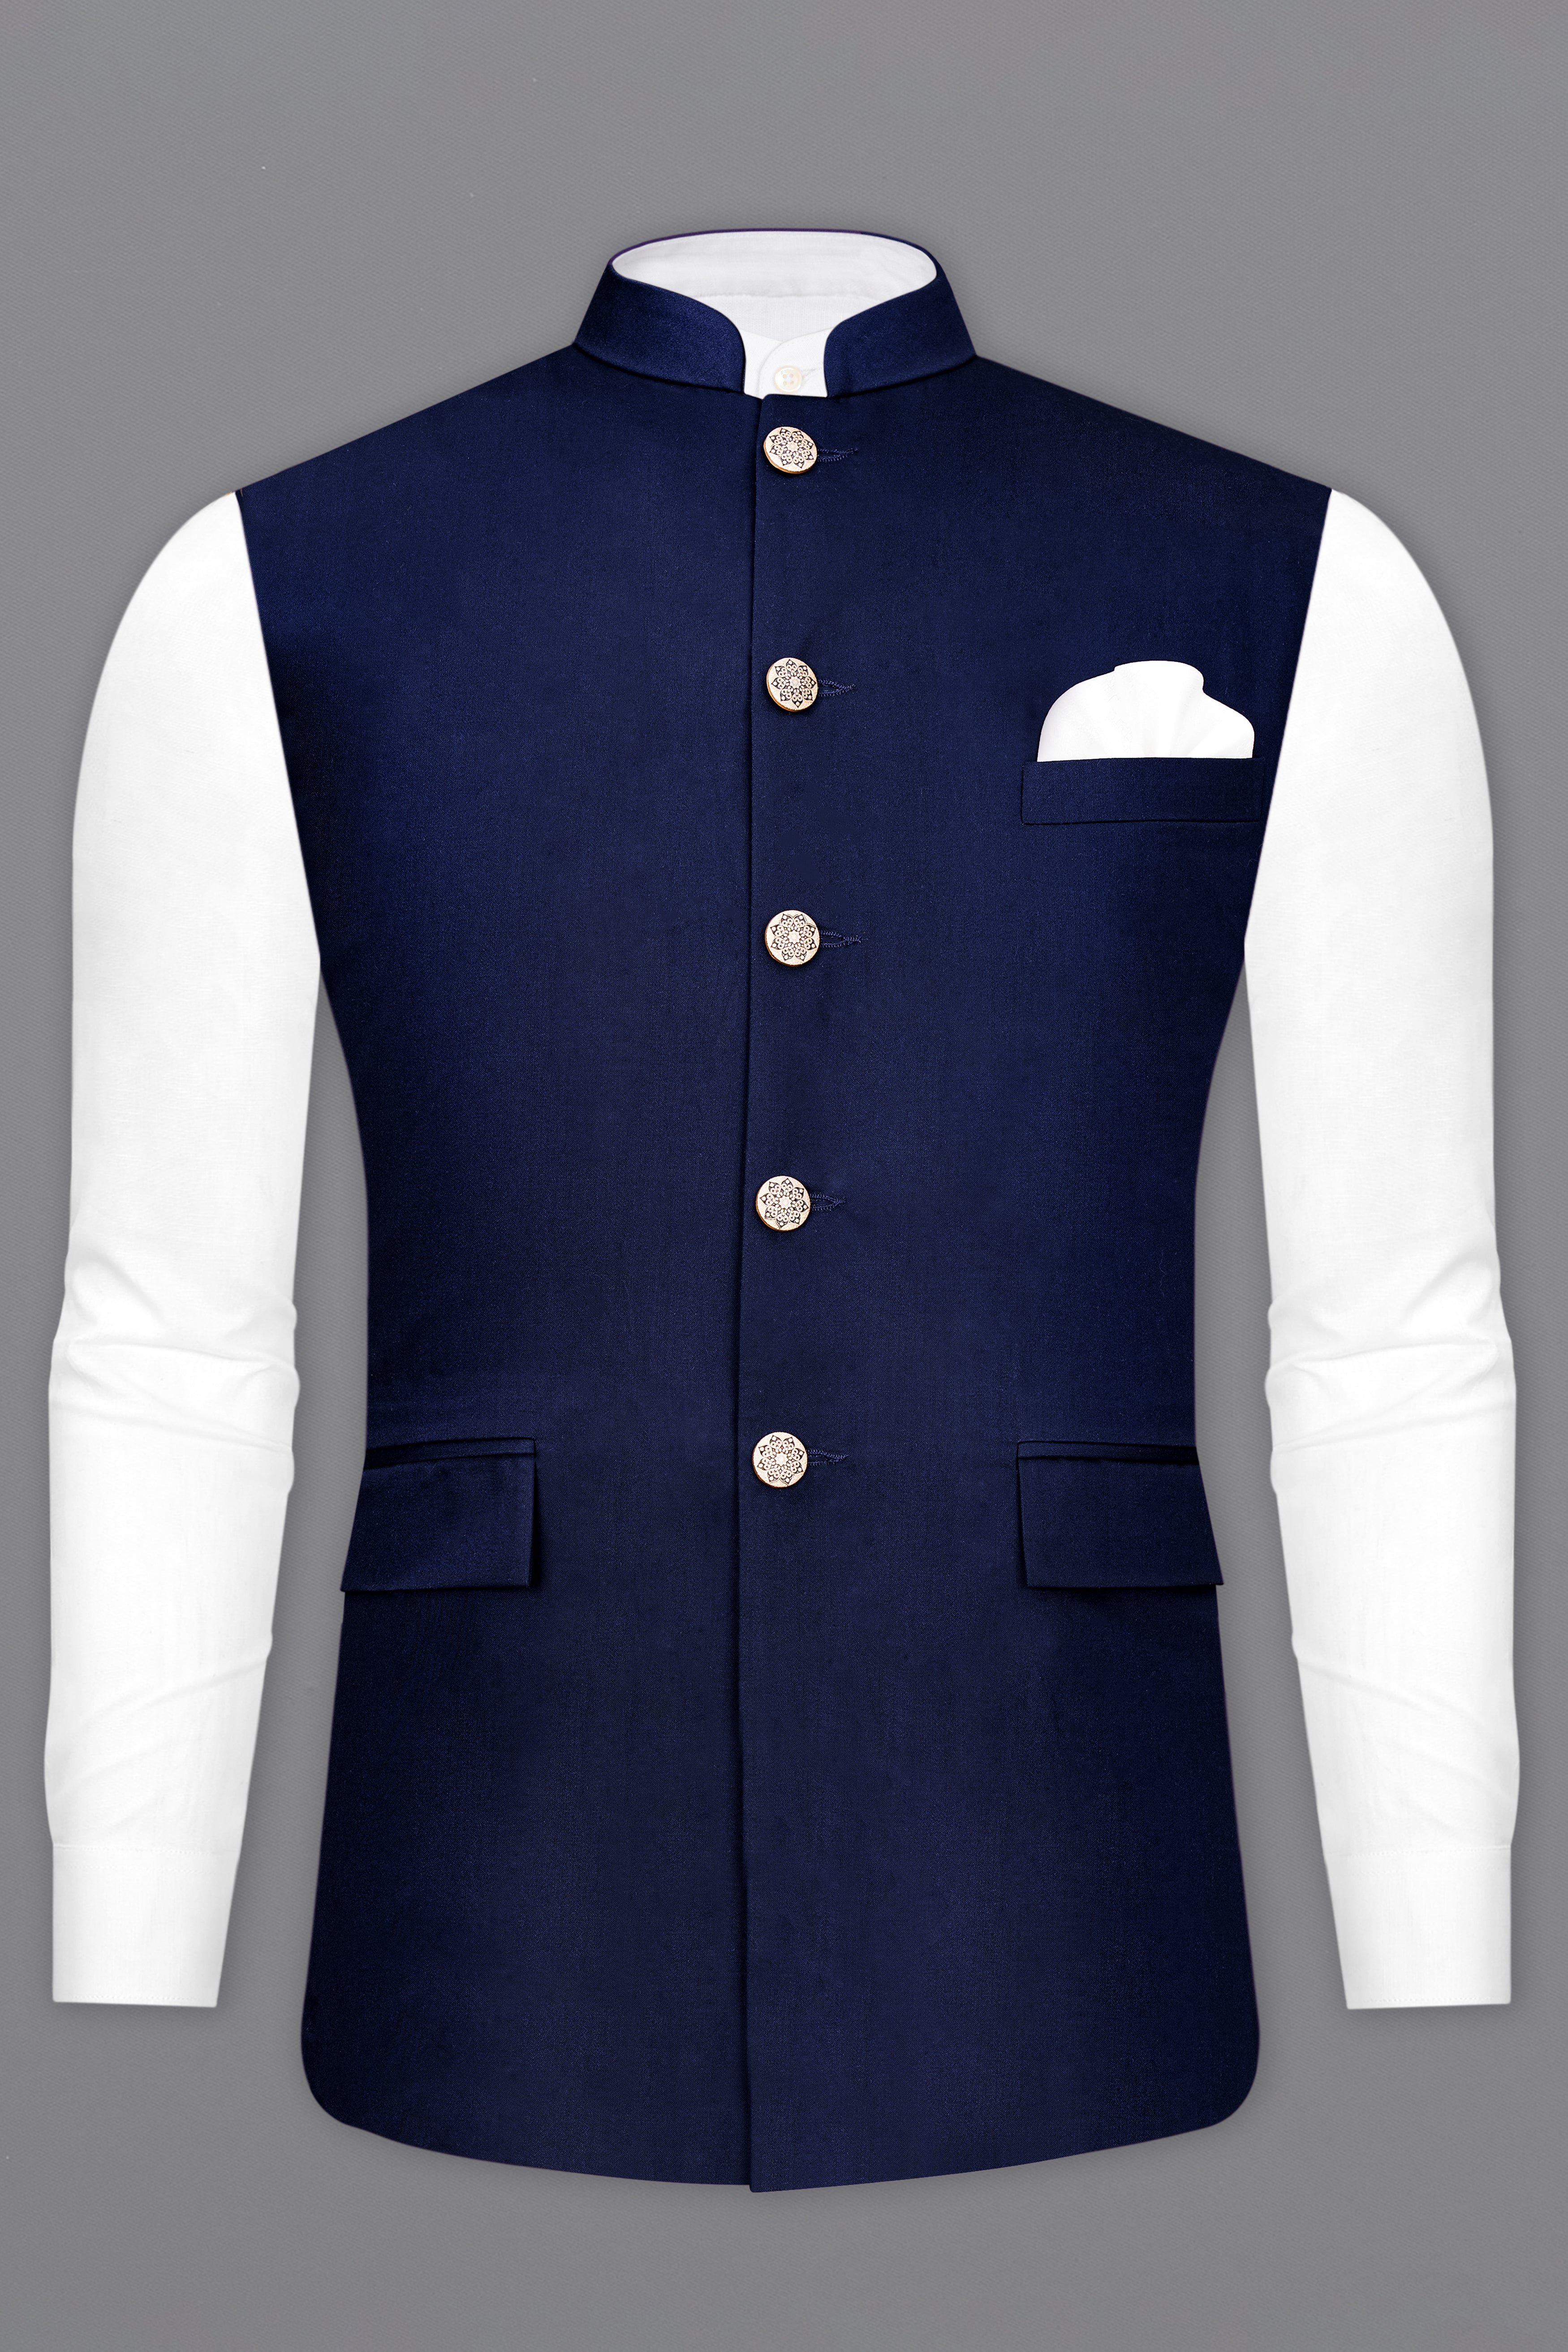 Space Blue Nehru Jacket